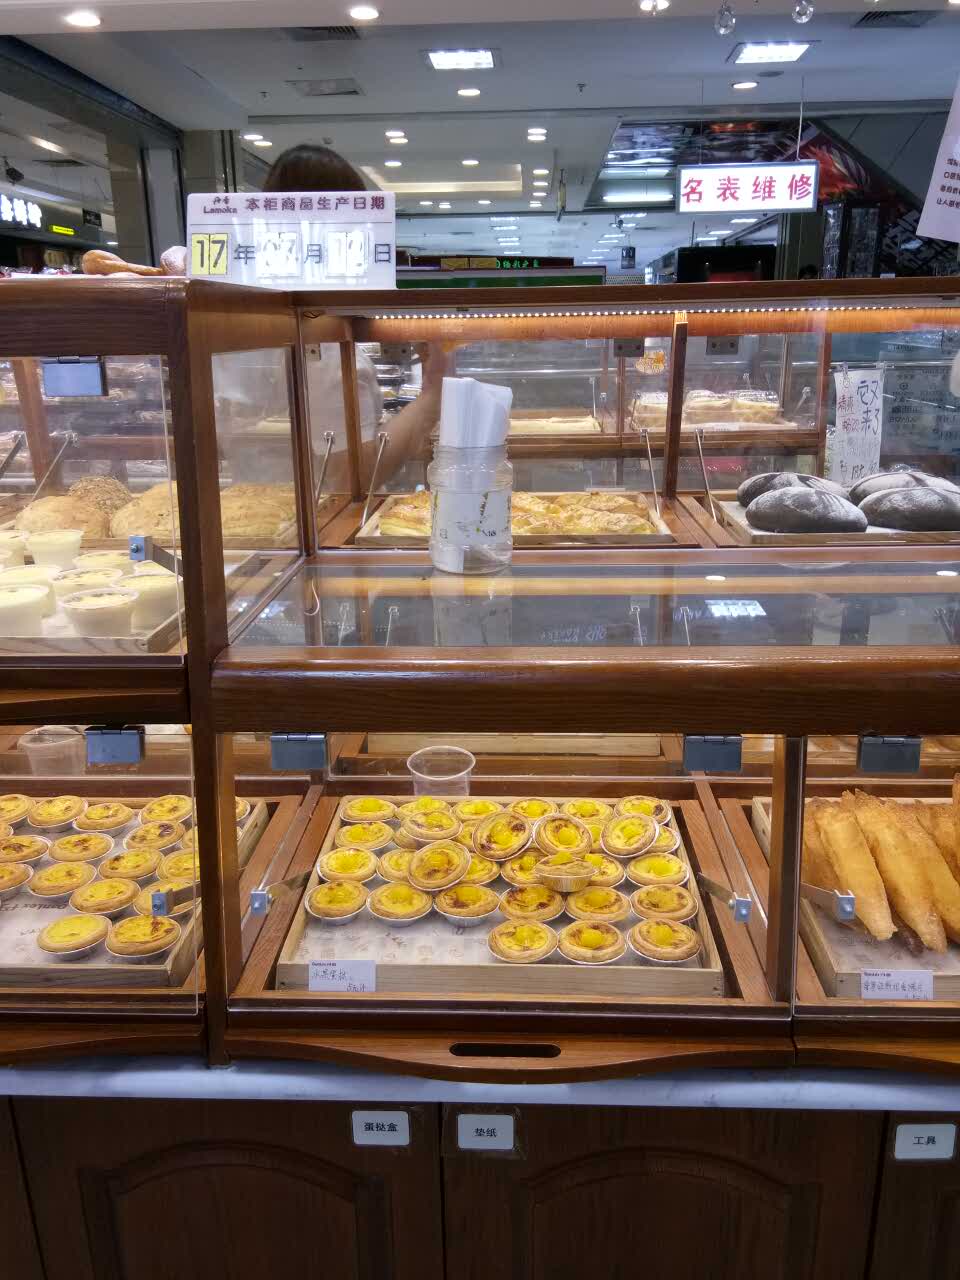 乳山丹香蛋糕店图片